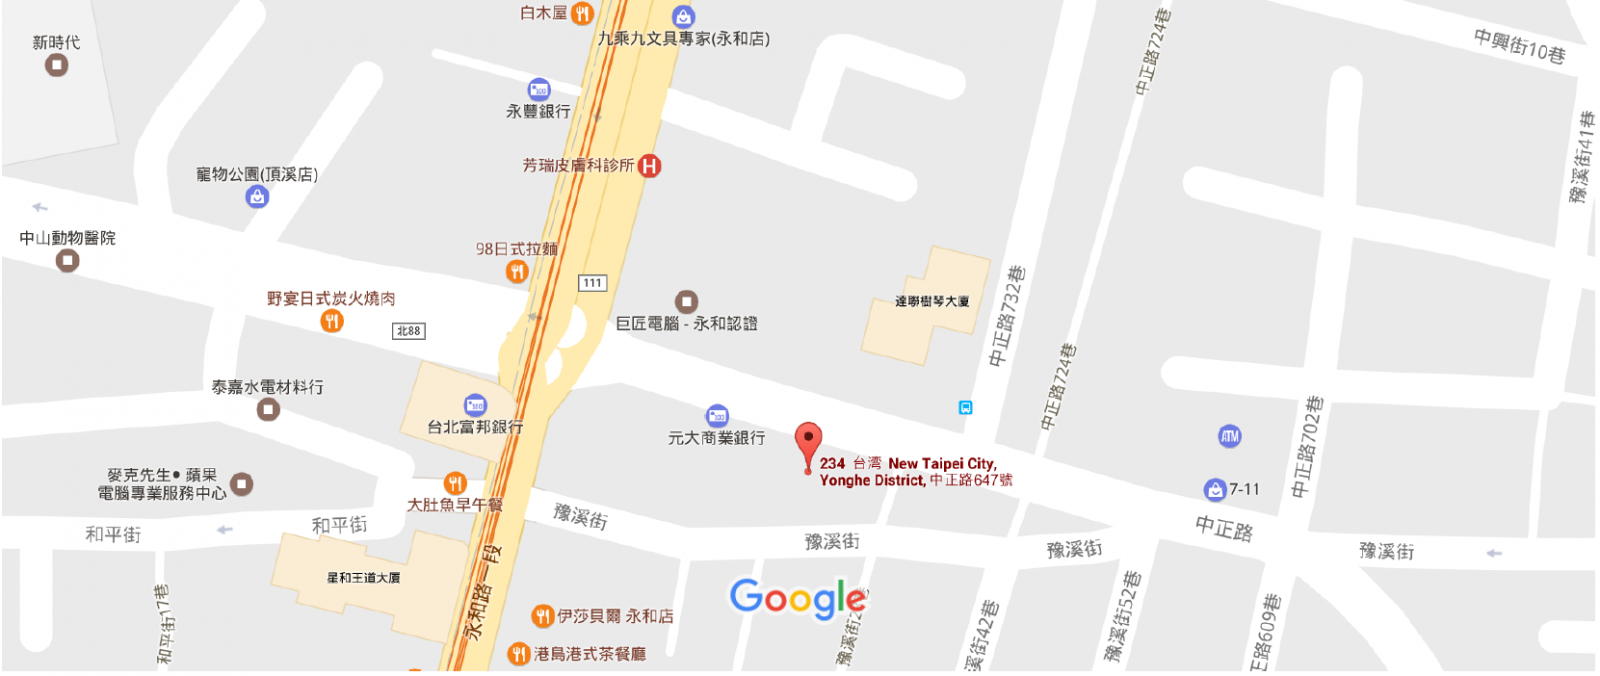 https://www.google.com.tw/maps/place/234,+New+Taipei+City,+Yonghe+District,+%E4%B8%AD%E6%AD%A3%E8%B7%AF647%E8%99%9F/@25.0108716,121.5158429,15z/data=!4m5!3m4!1s0x3442a9e9c276832d:0xdc348b4ddbb198a7!8m2!3d25.0100179!4d121.5151443